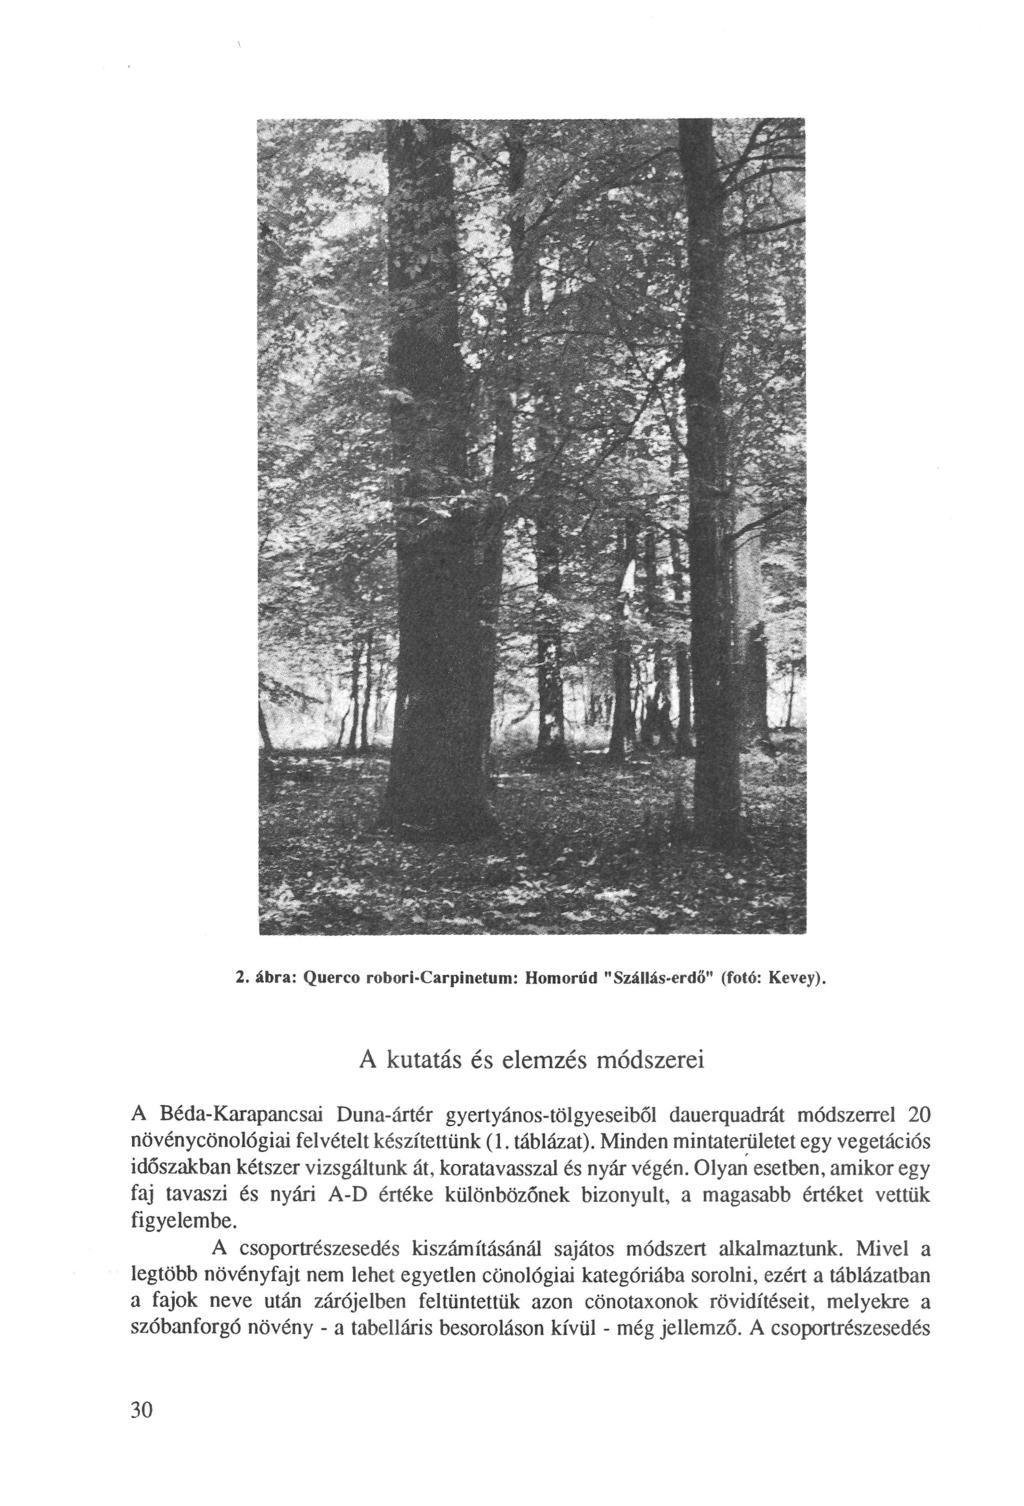 2. ábra: Querco robori-carpinetum: Homorúd "zállás-erdő" (fotó: Kevey).